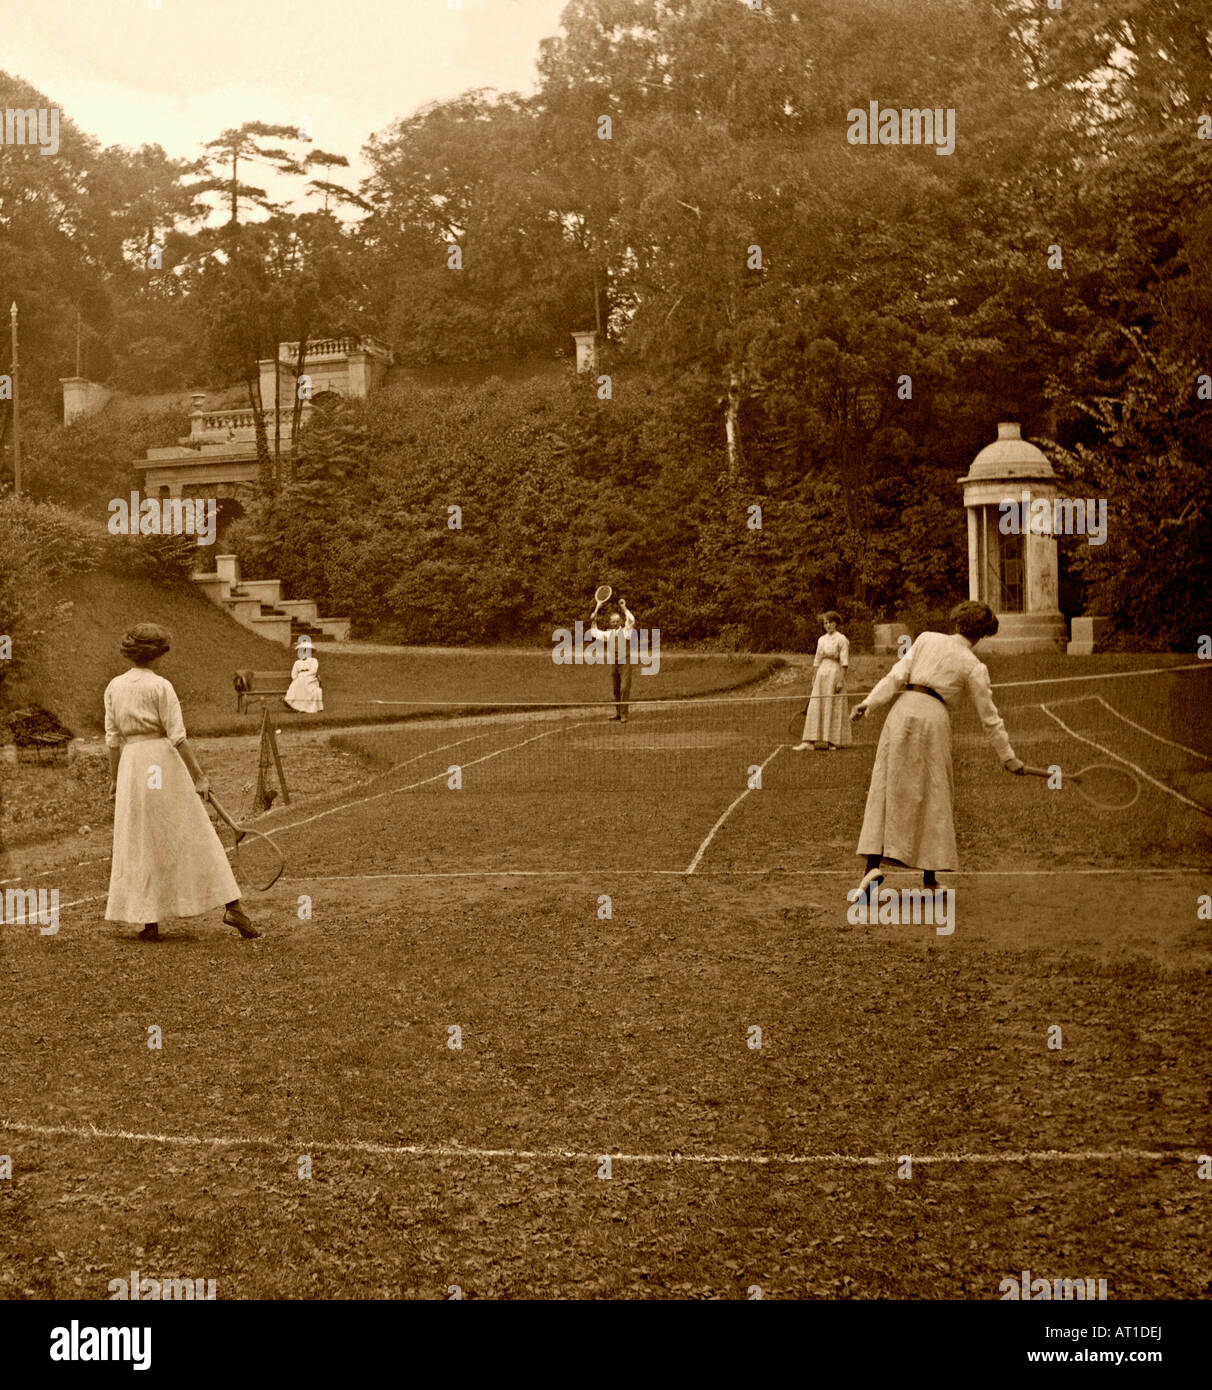 Ein vornehmendes Tennisspiel in Großbritannien um 1900. Ein Mann und 3 Damen spielen in einem Landhaus/Herrenhaus auf einem unebenen Rasen – ein Zeitvertreib der Oberschicht. Stockfoto